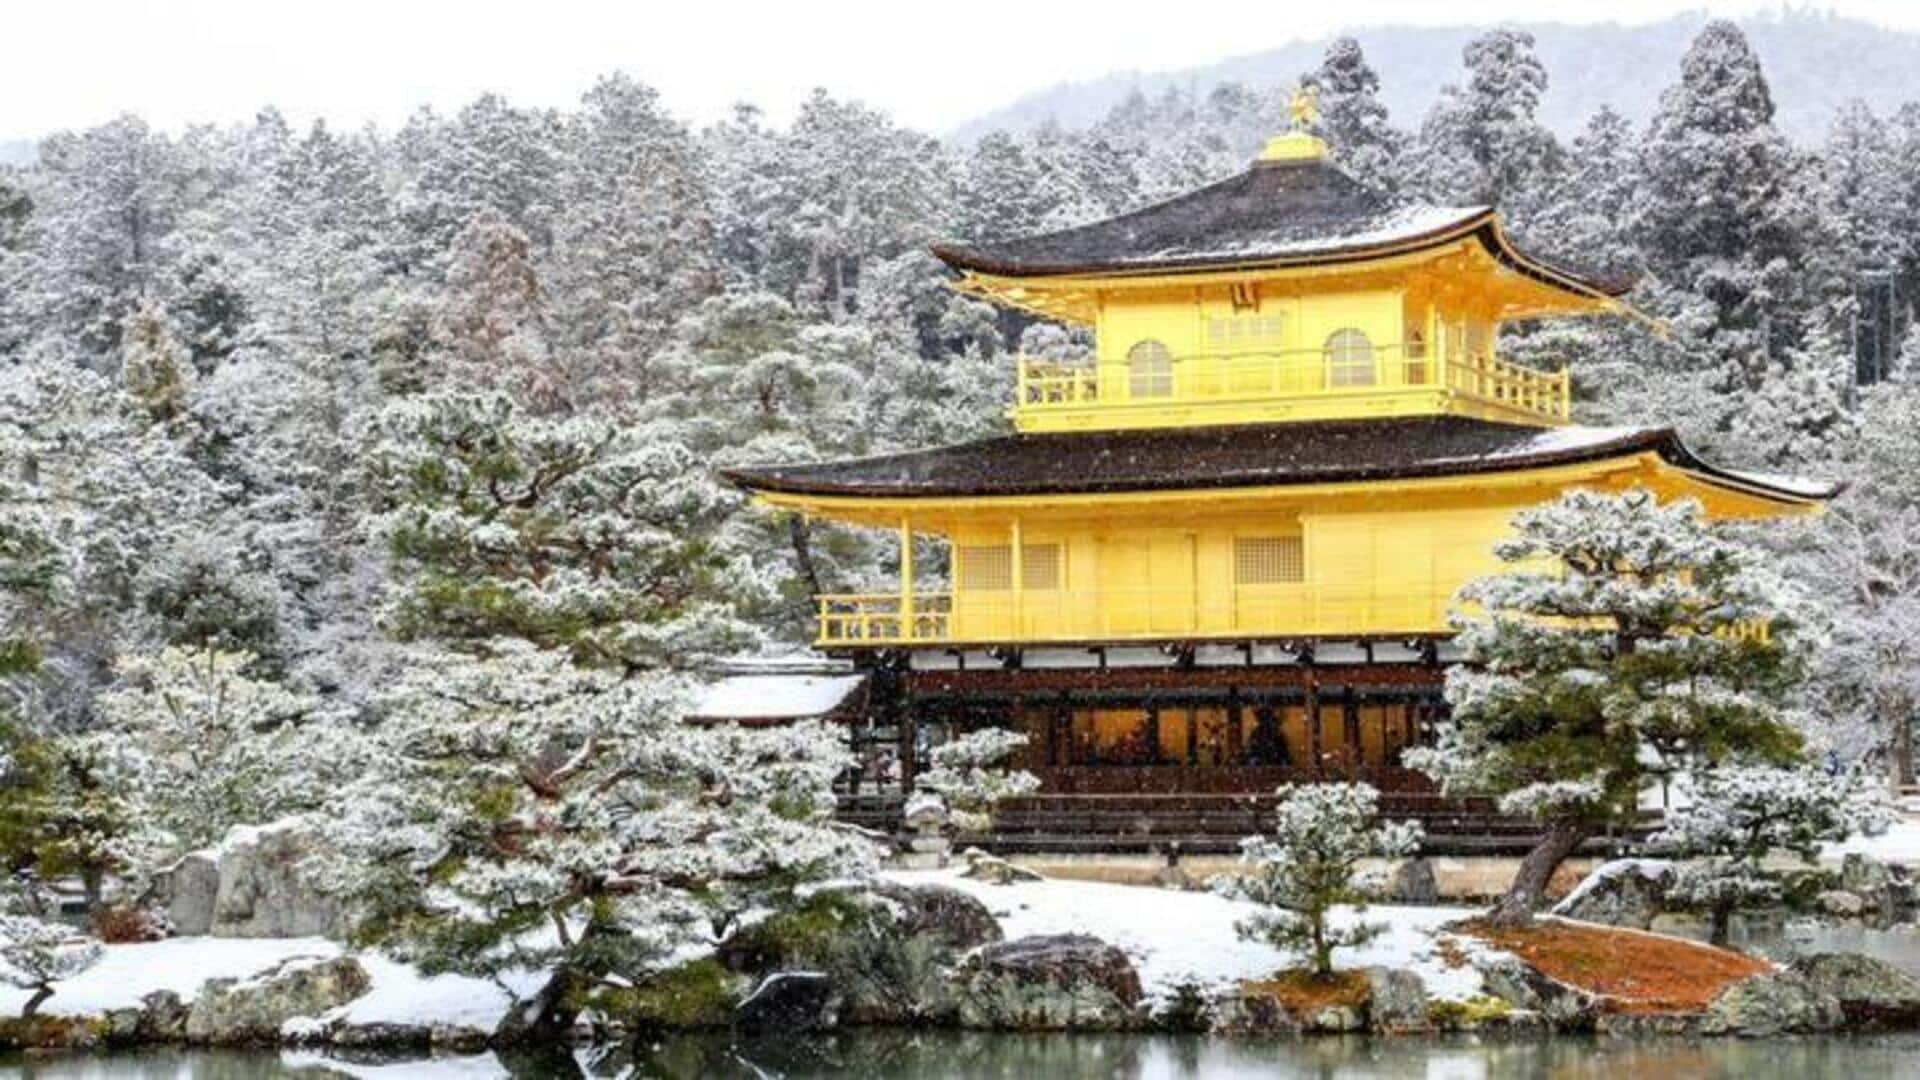 Berwisata Ke Kyoto, Jepang: Sederet Kegiatan Menarik Yang Dapat Dilakukan